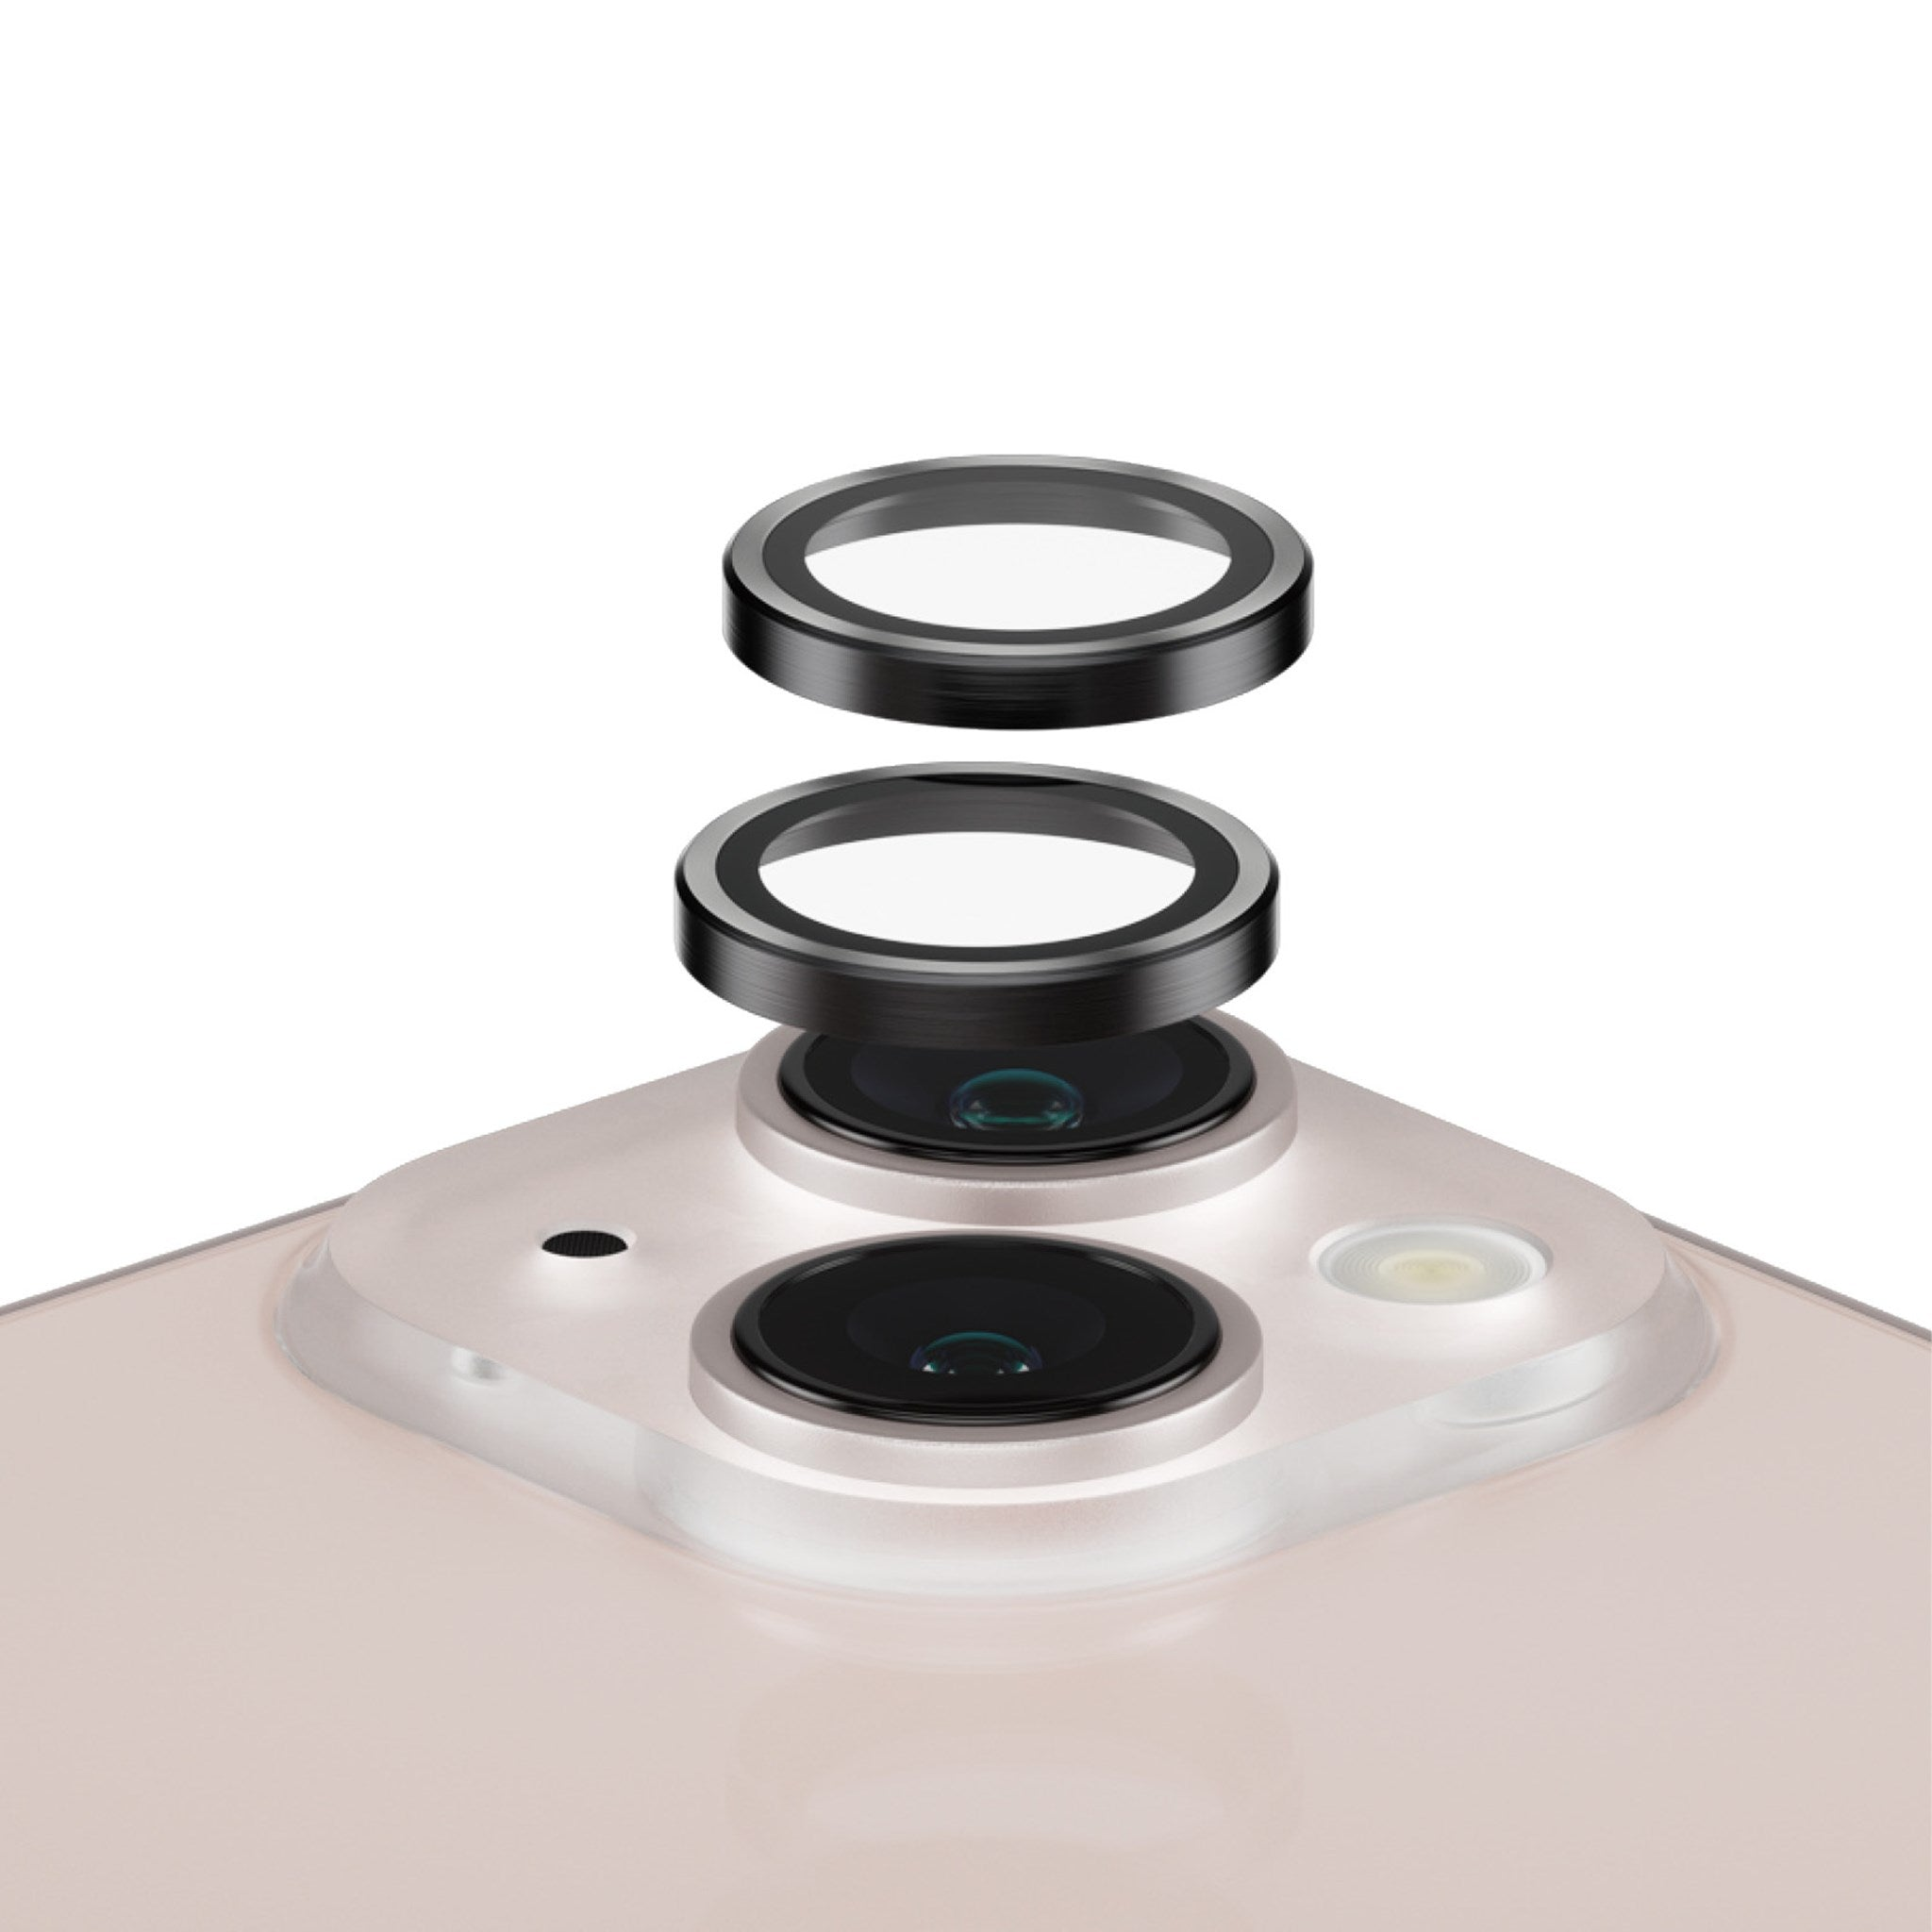 13) Apple Kameraschutz(für iPhone Kameraschutz Hoops™ | PANZERGLASS 13 mini